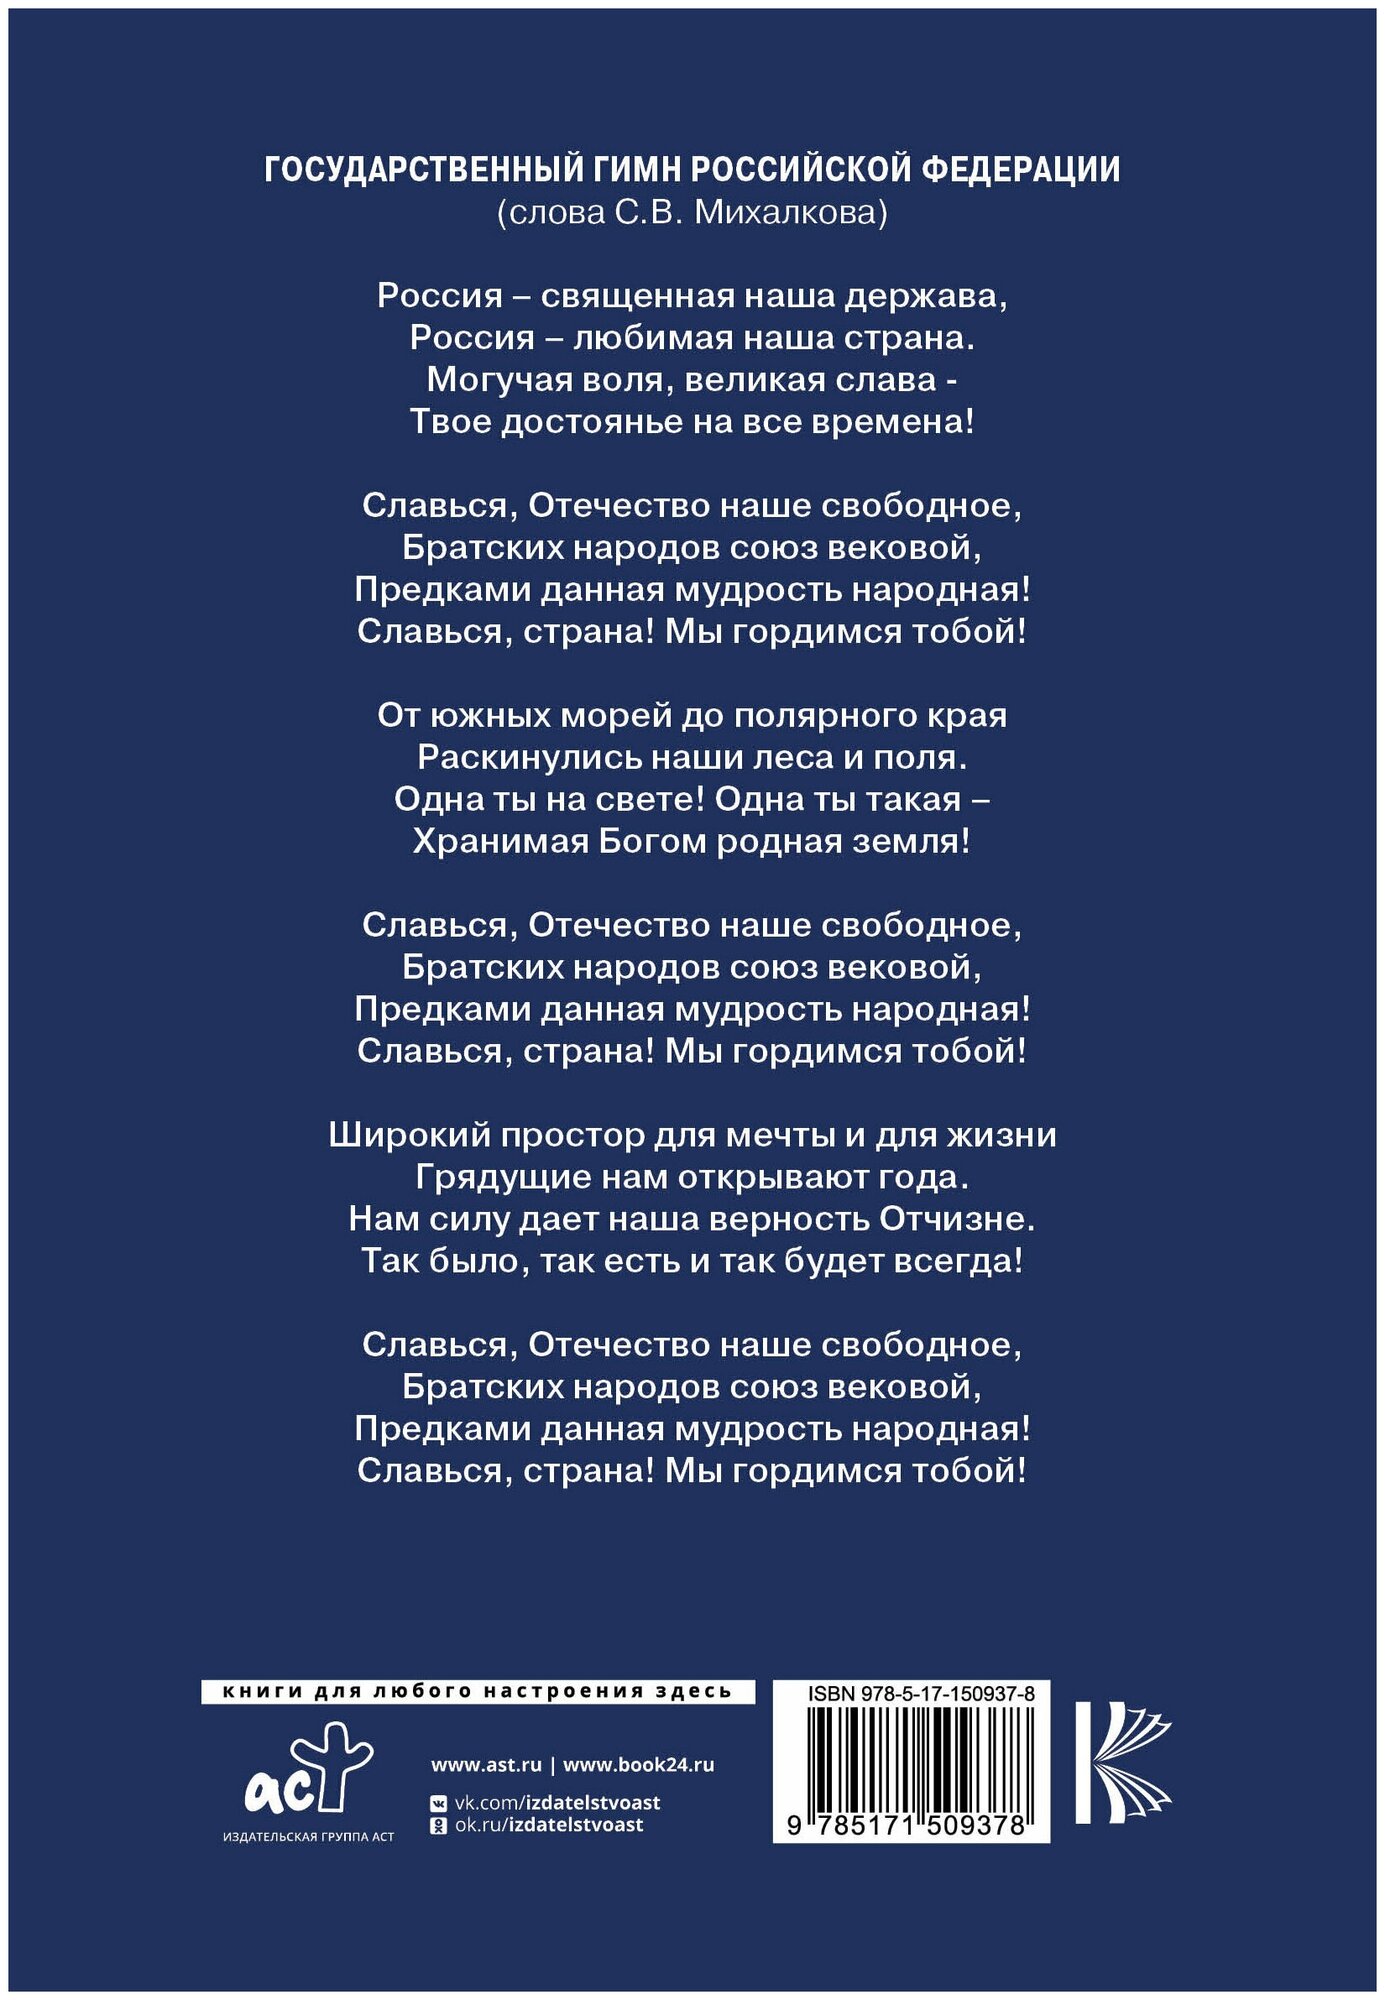 Конституция Российской Федерации Новая редакция - фото №2